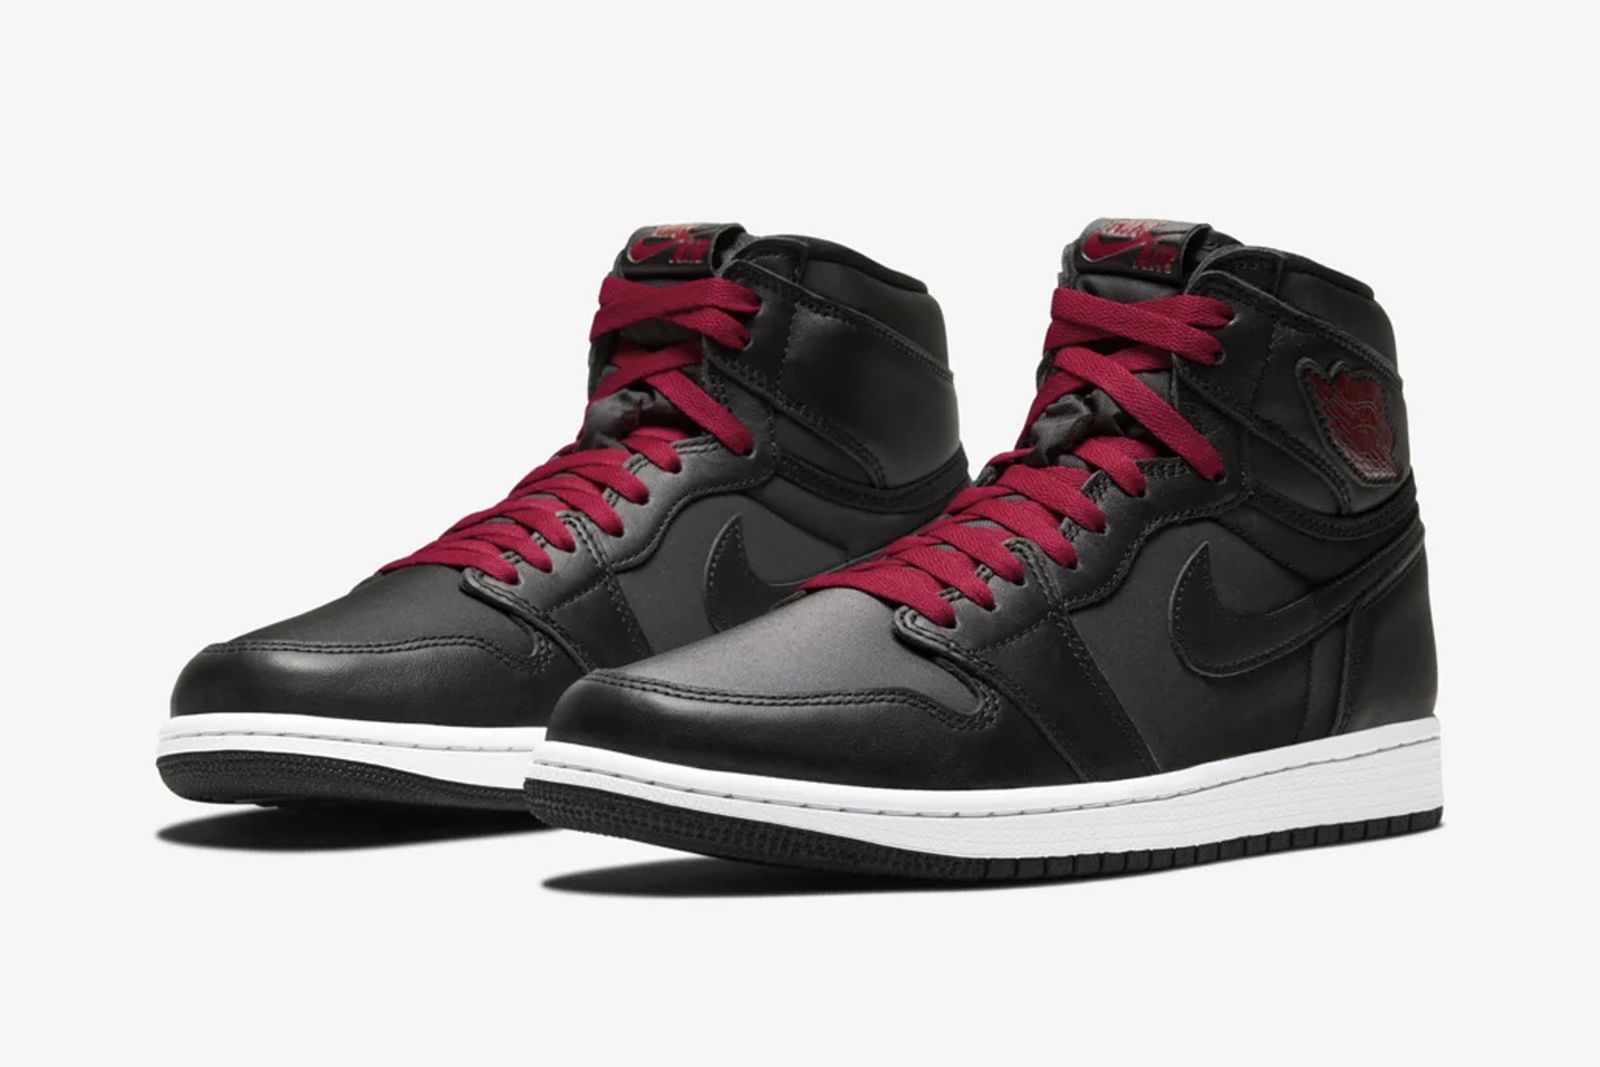 Nike red and black jordan's 1 Air Jordan 1 Satin Black: How & Where to Buy Tomorrow